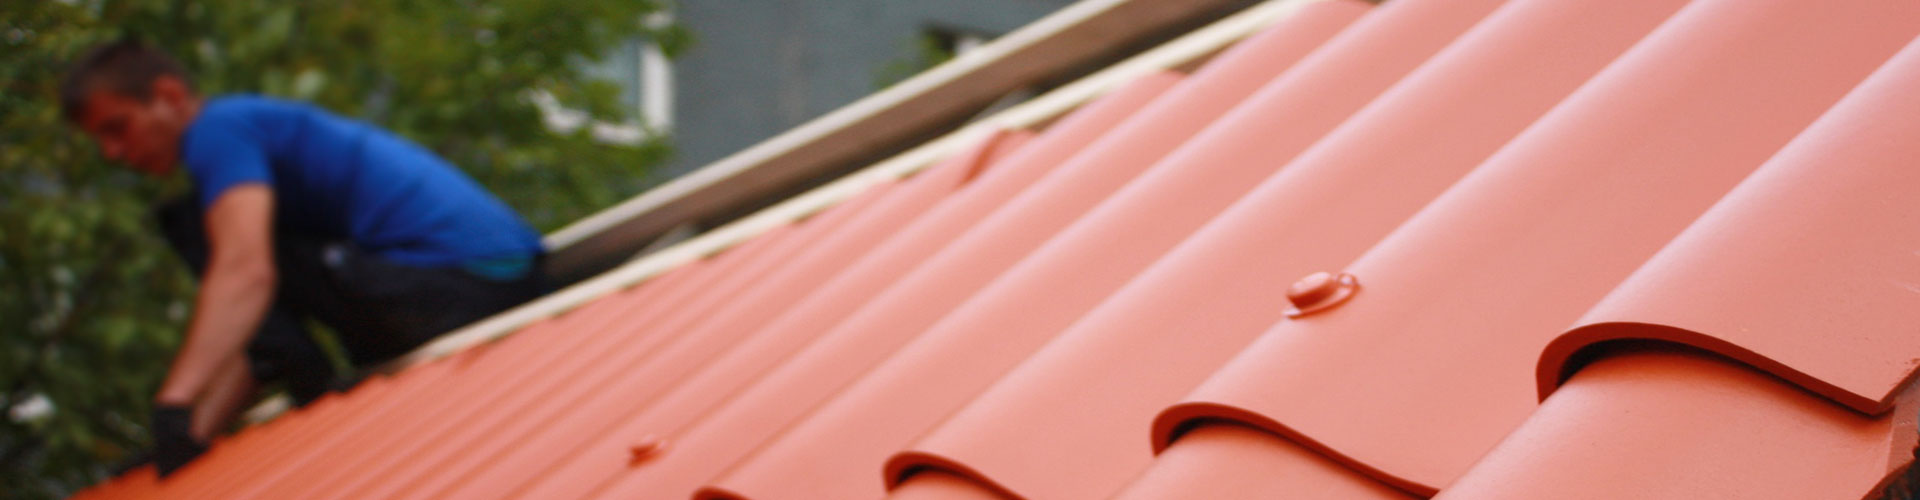 Panel sándwich teja: la mejor opción para aislar tu techo o fachada